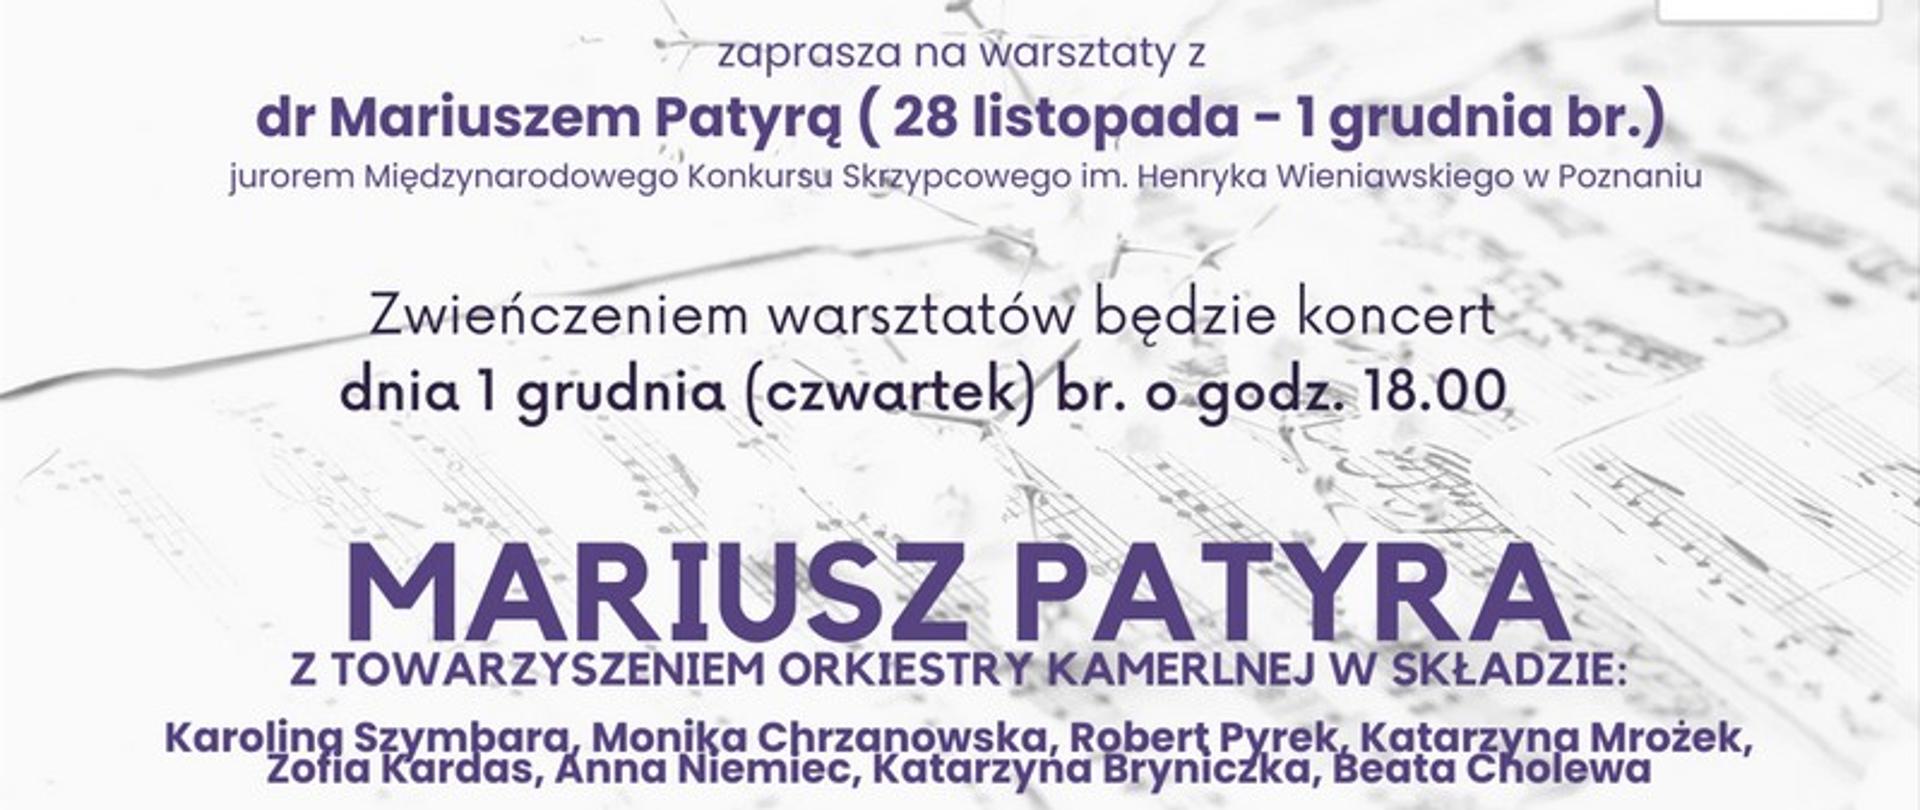 Plakat w formie karki nutowej zapraszający na warsztaty skrzypcowe z dr Mariuszem Patyrą w dniach 28 listopada do 1 grudnia 2022. oraz o zwieńczeniem warsztatów koncertem w dniu 1 grudnia 2022 r. o godz. 18. 